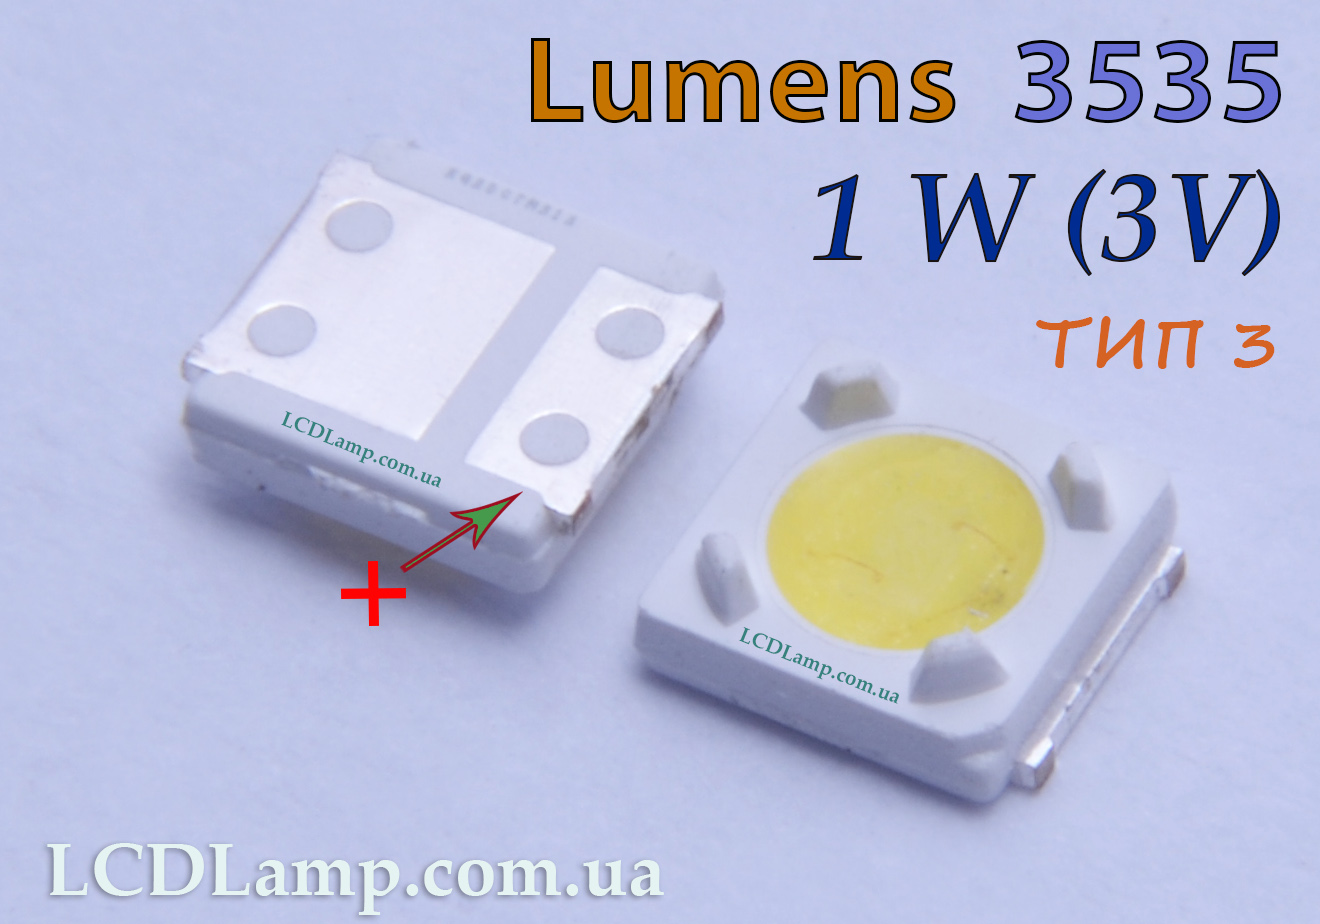 lumens 3535 тип 3